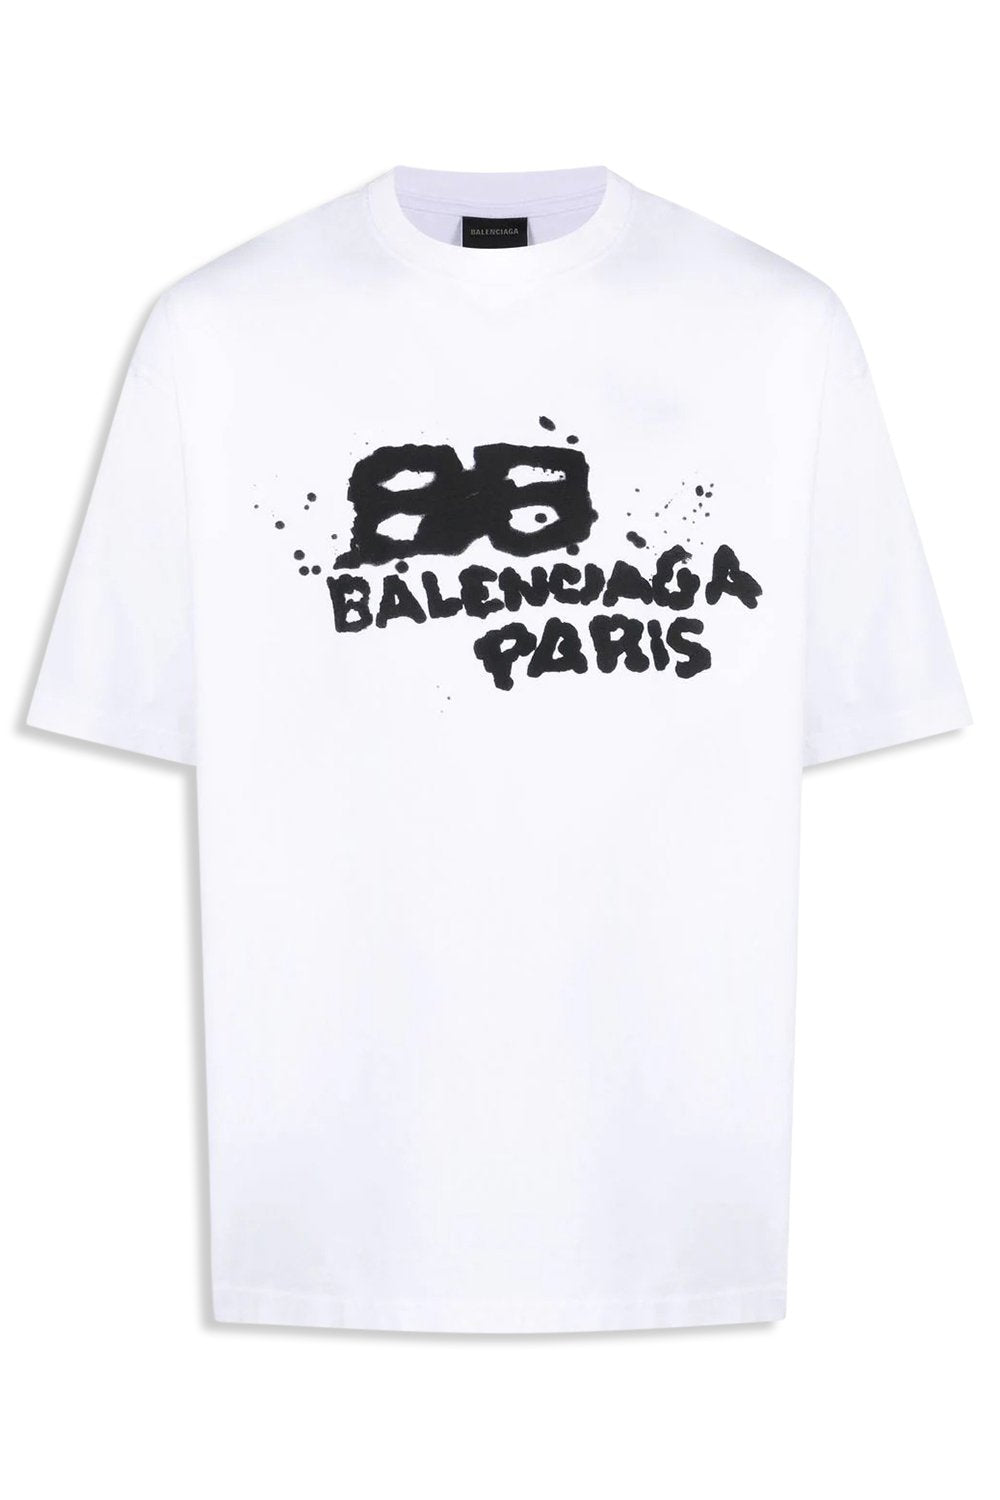 Men's White Balenciaga Paris Printed T-Shirt